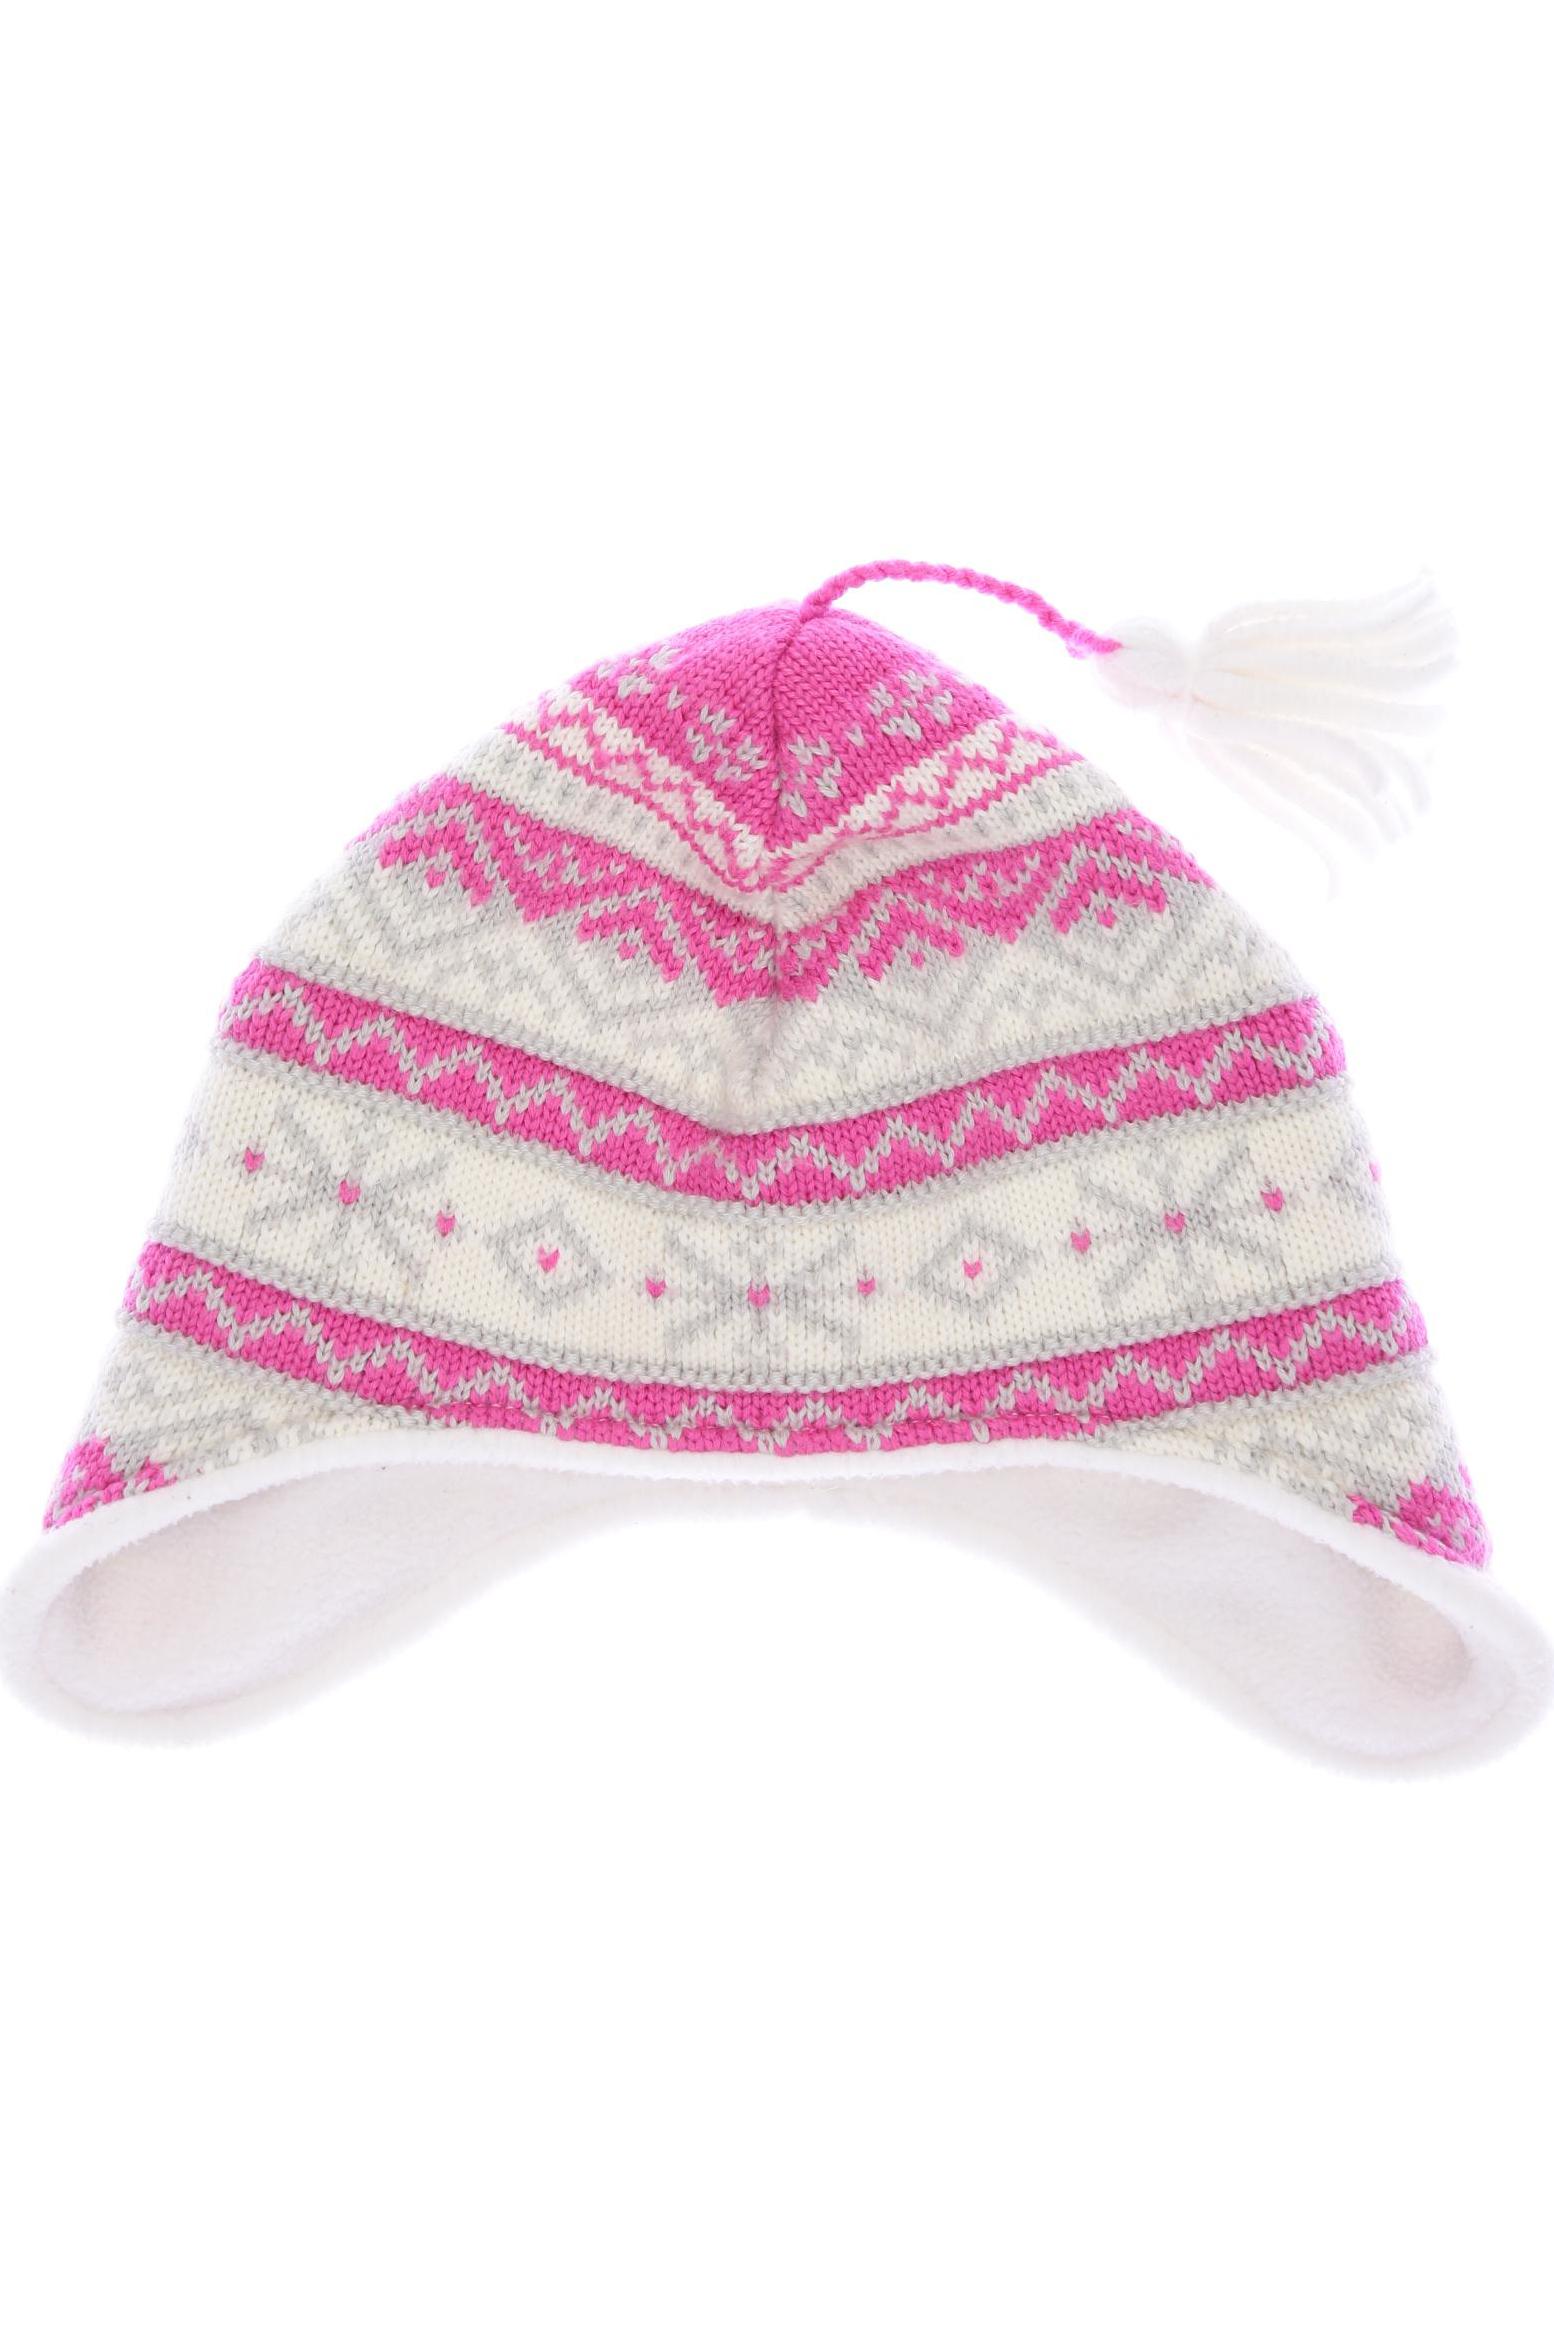 Eisbär Damen Hut/Mütze, pink von EISBÄR